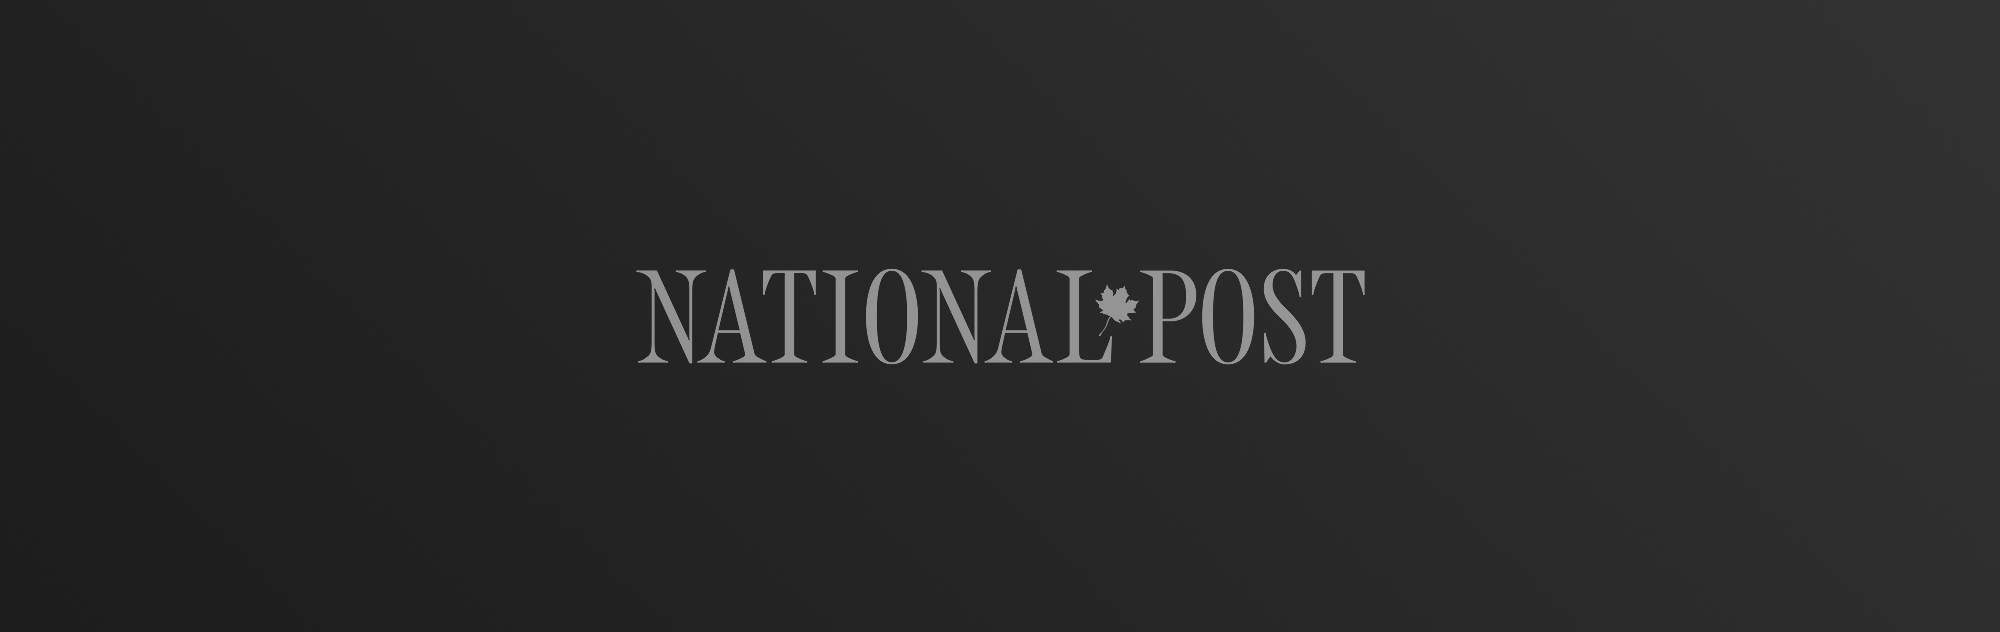 National Post logo on dark gradient background